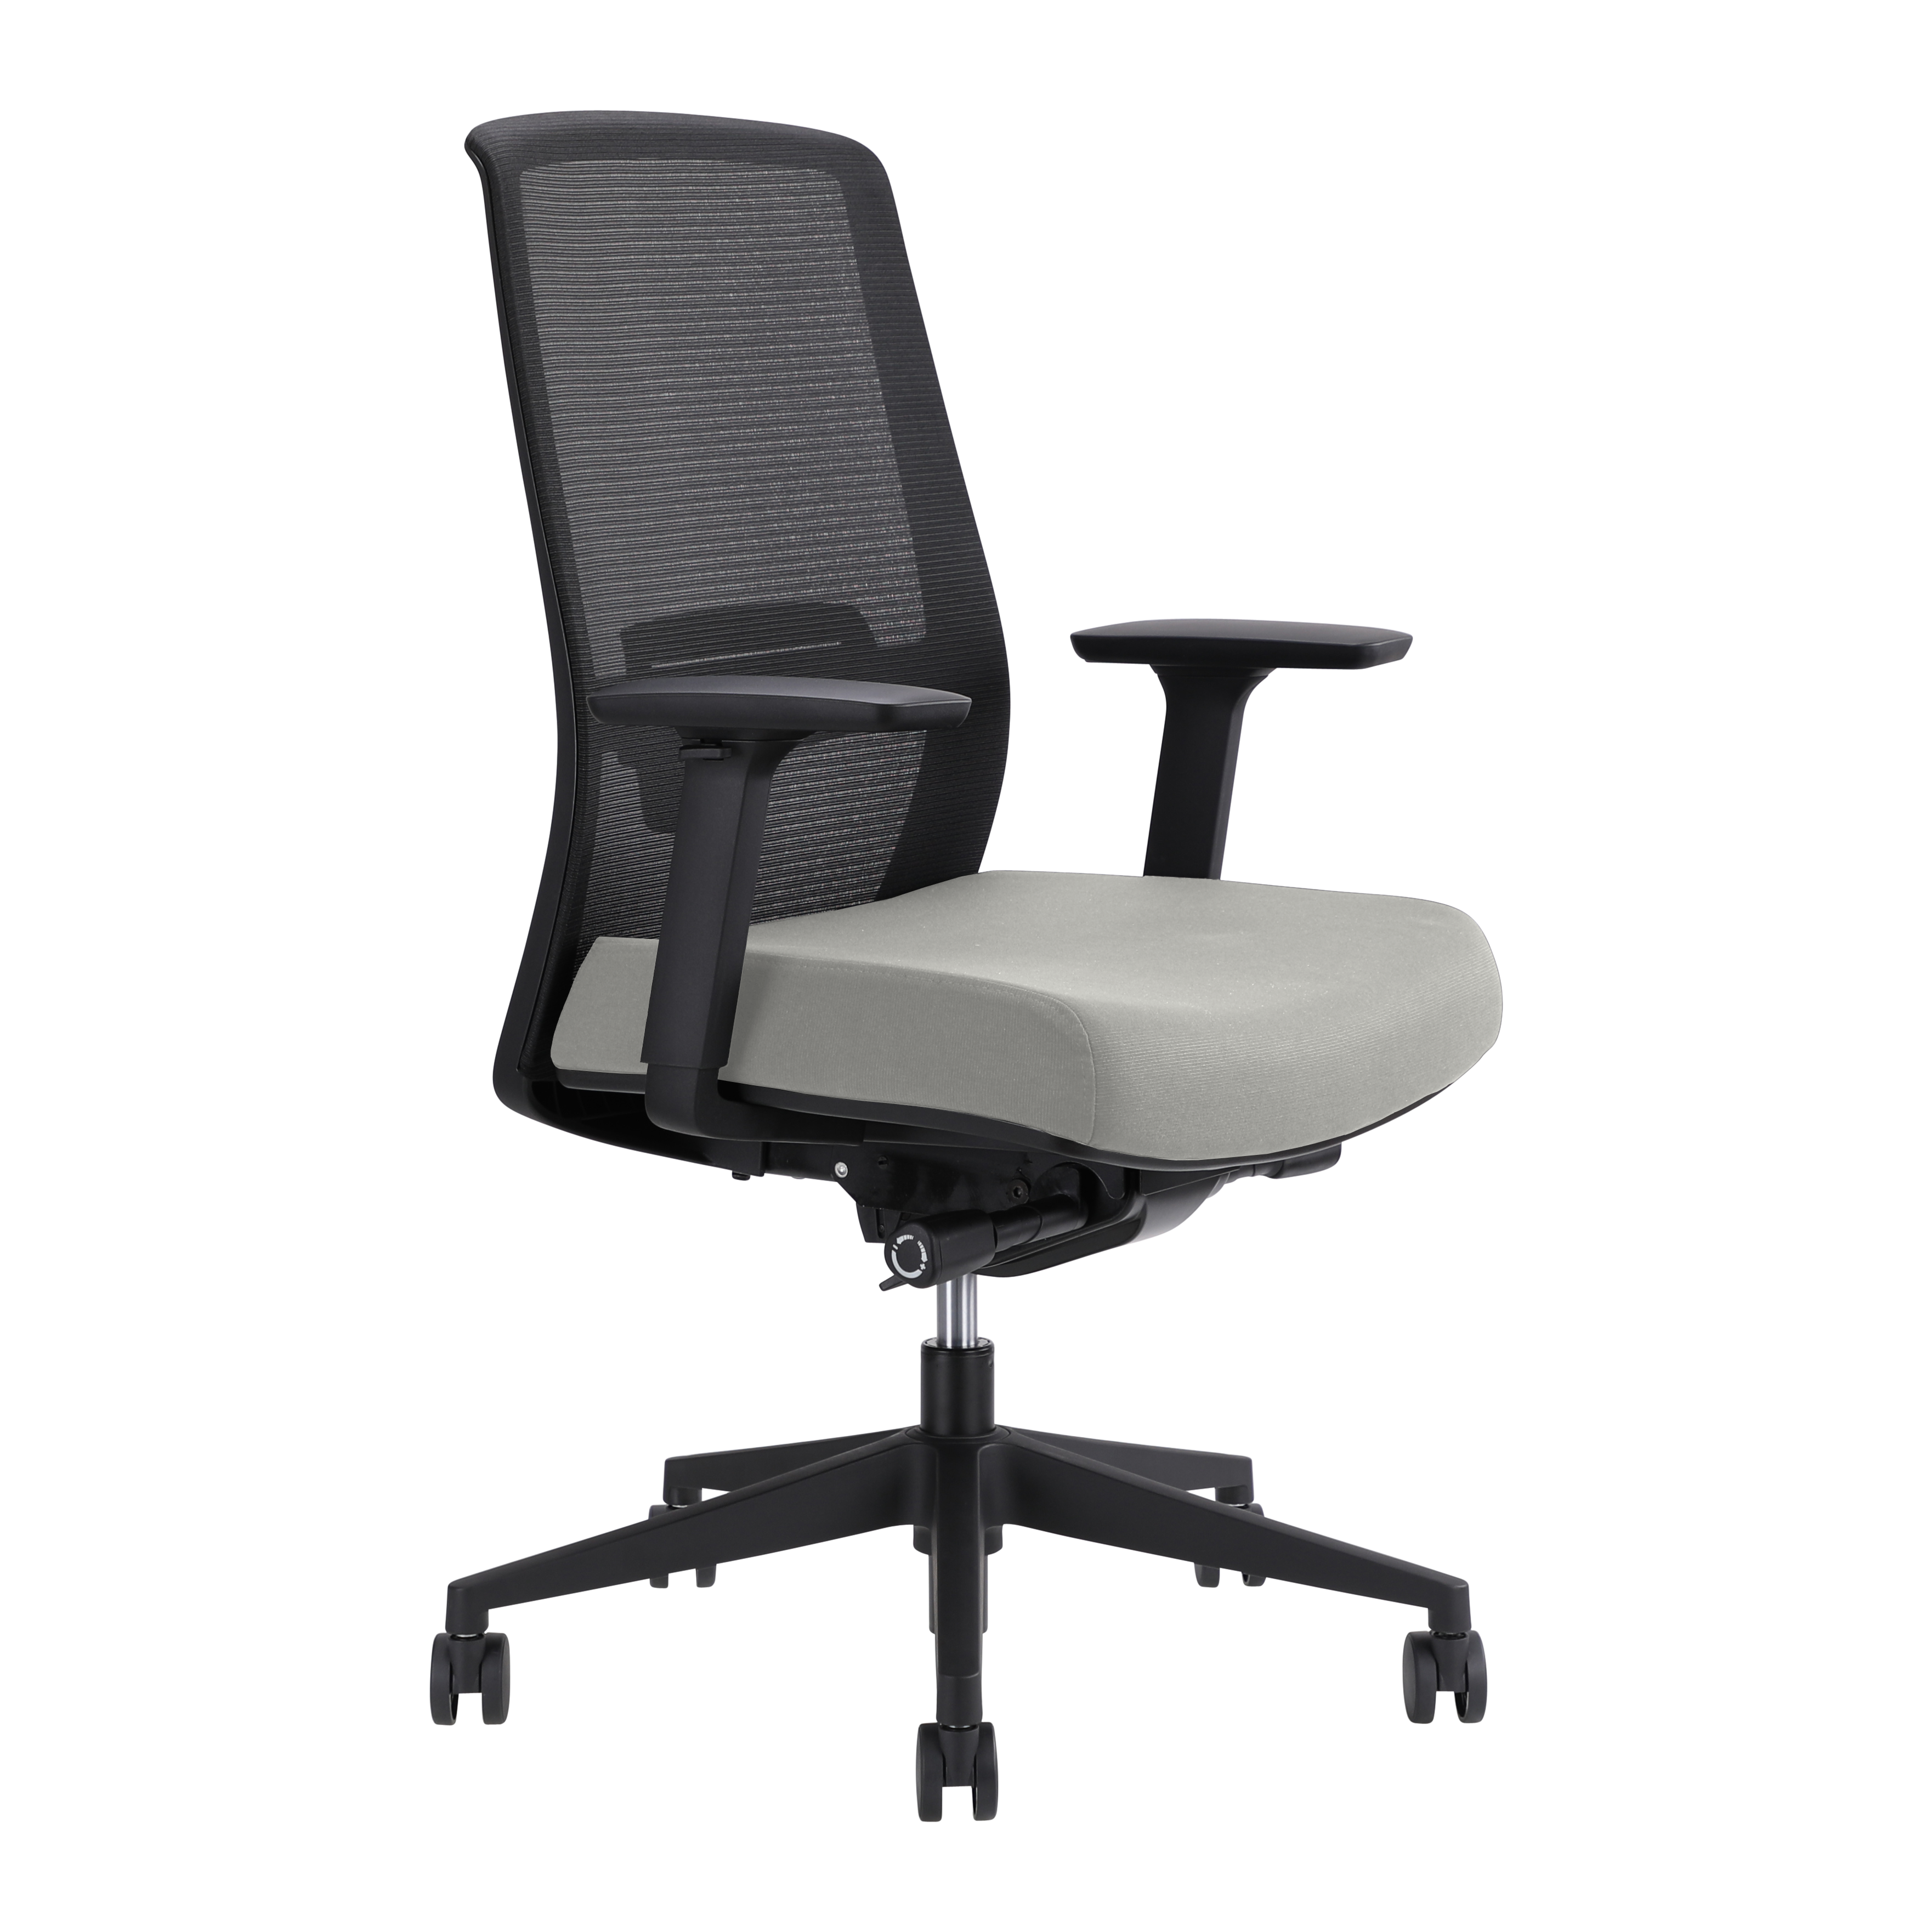 Jirra side control synchro task chair